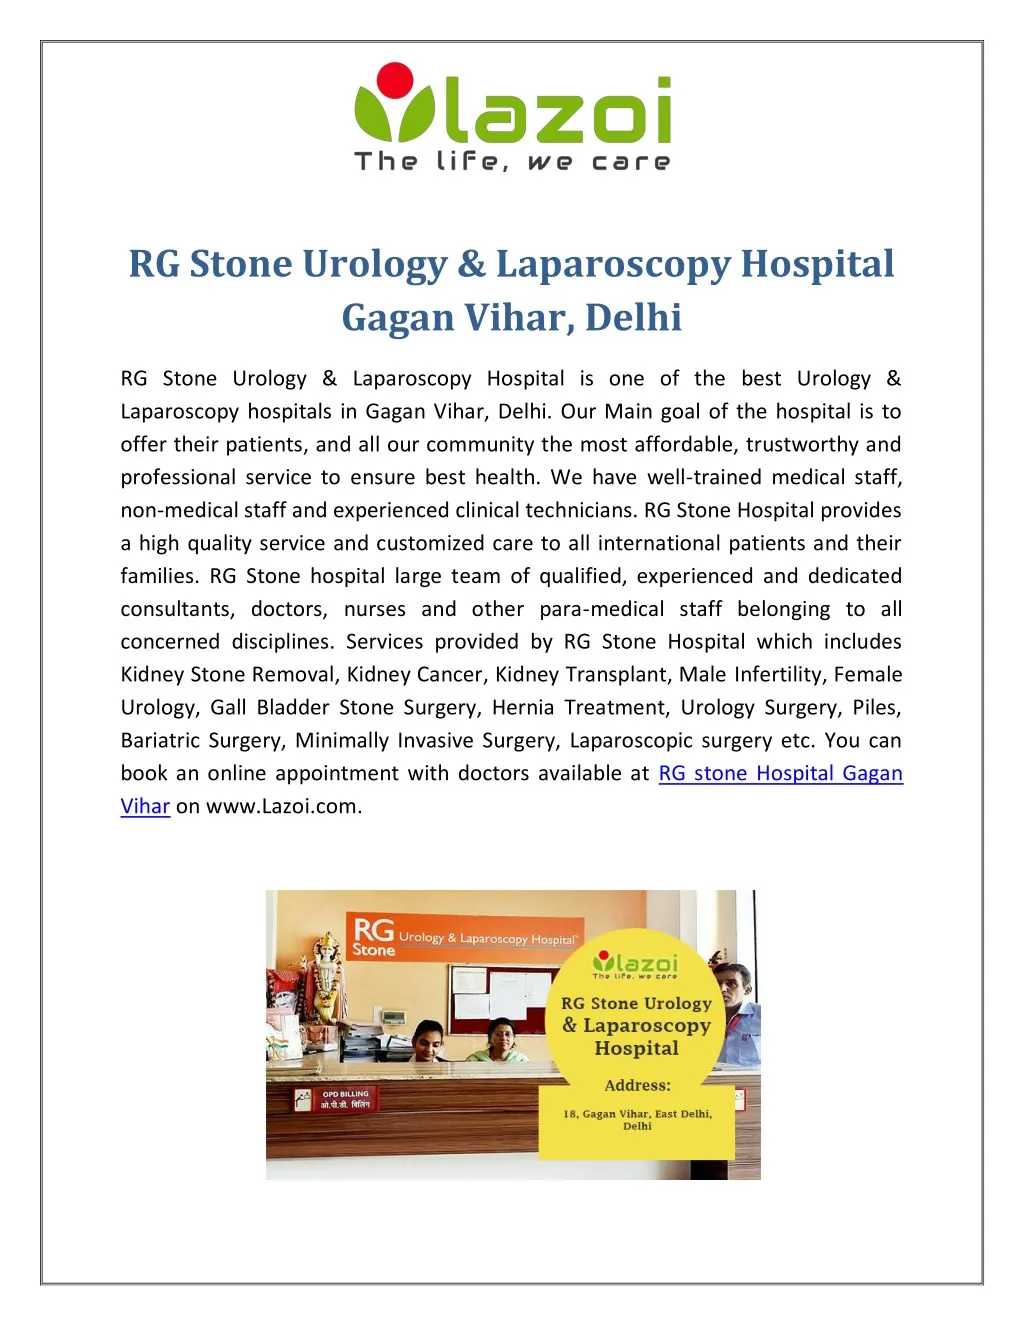 rg stone urology laparoscopy hospital gagan vihar